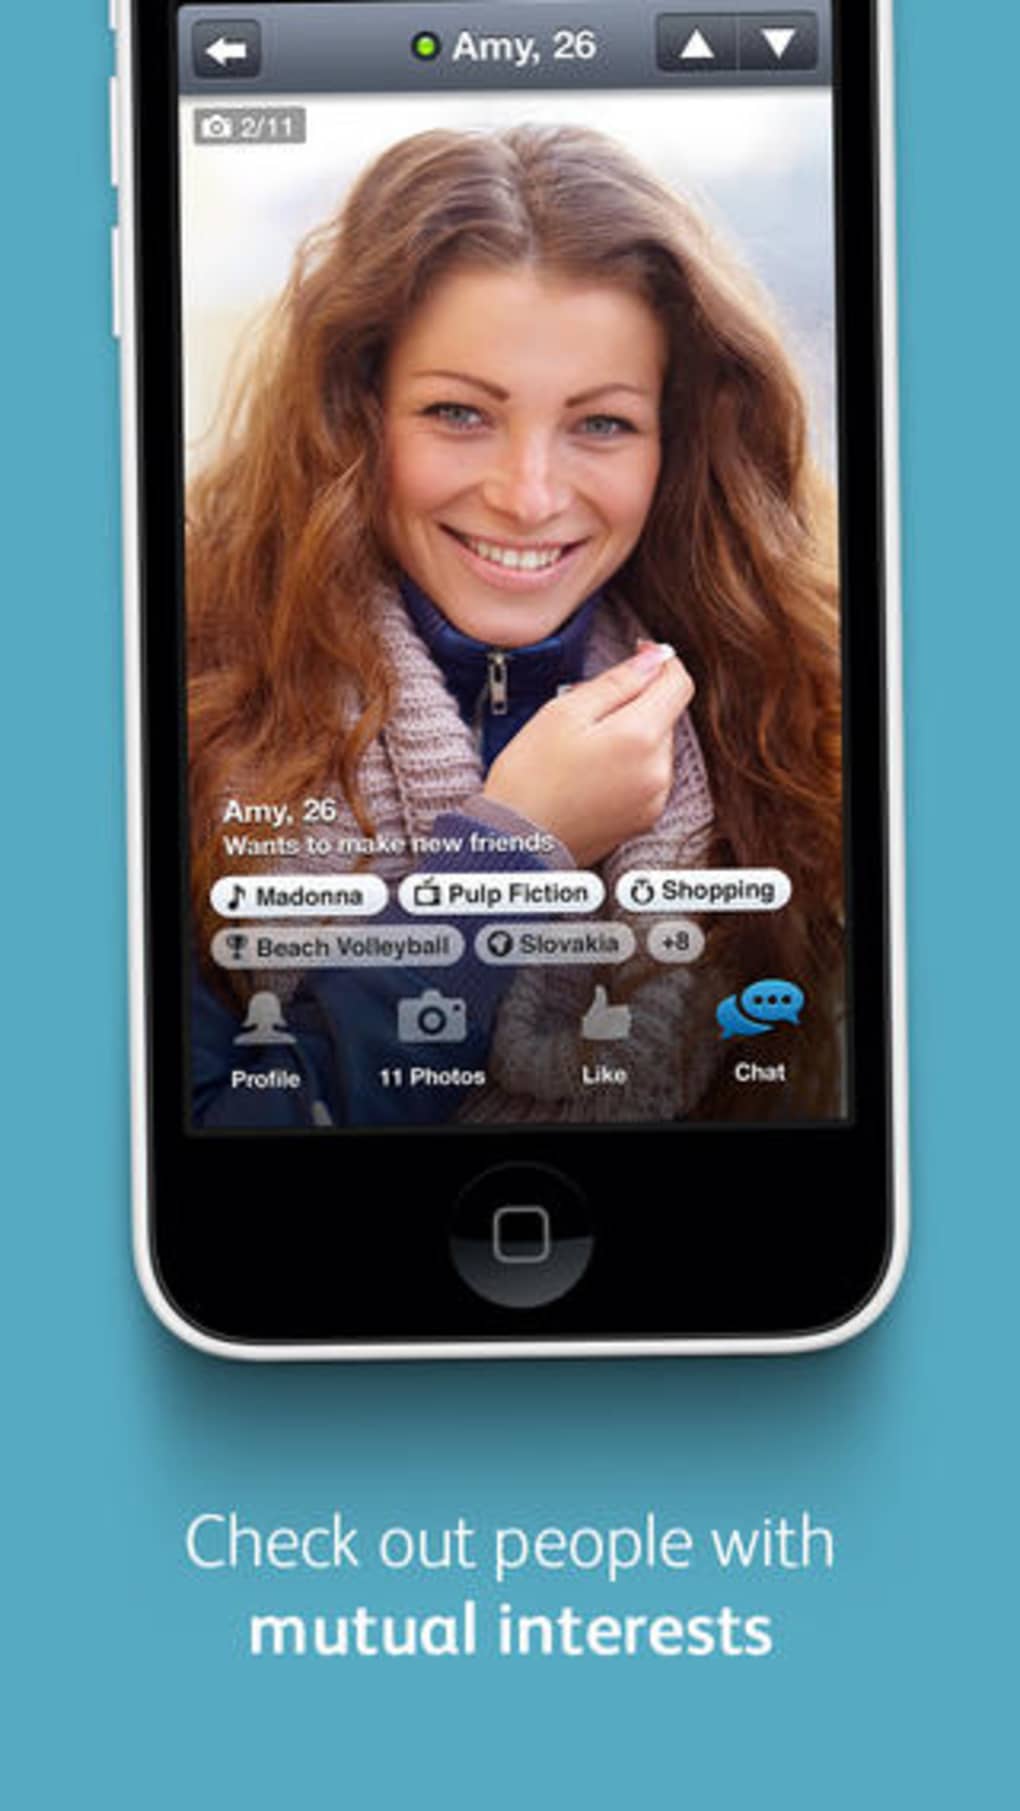 Kostenlose dating-chat-app für das iphone